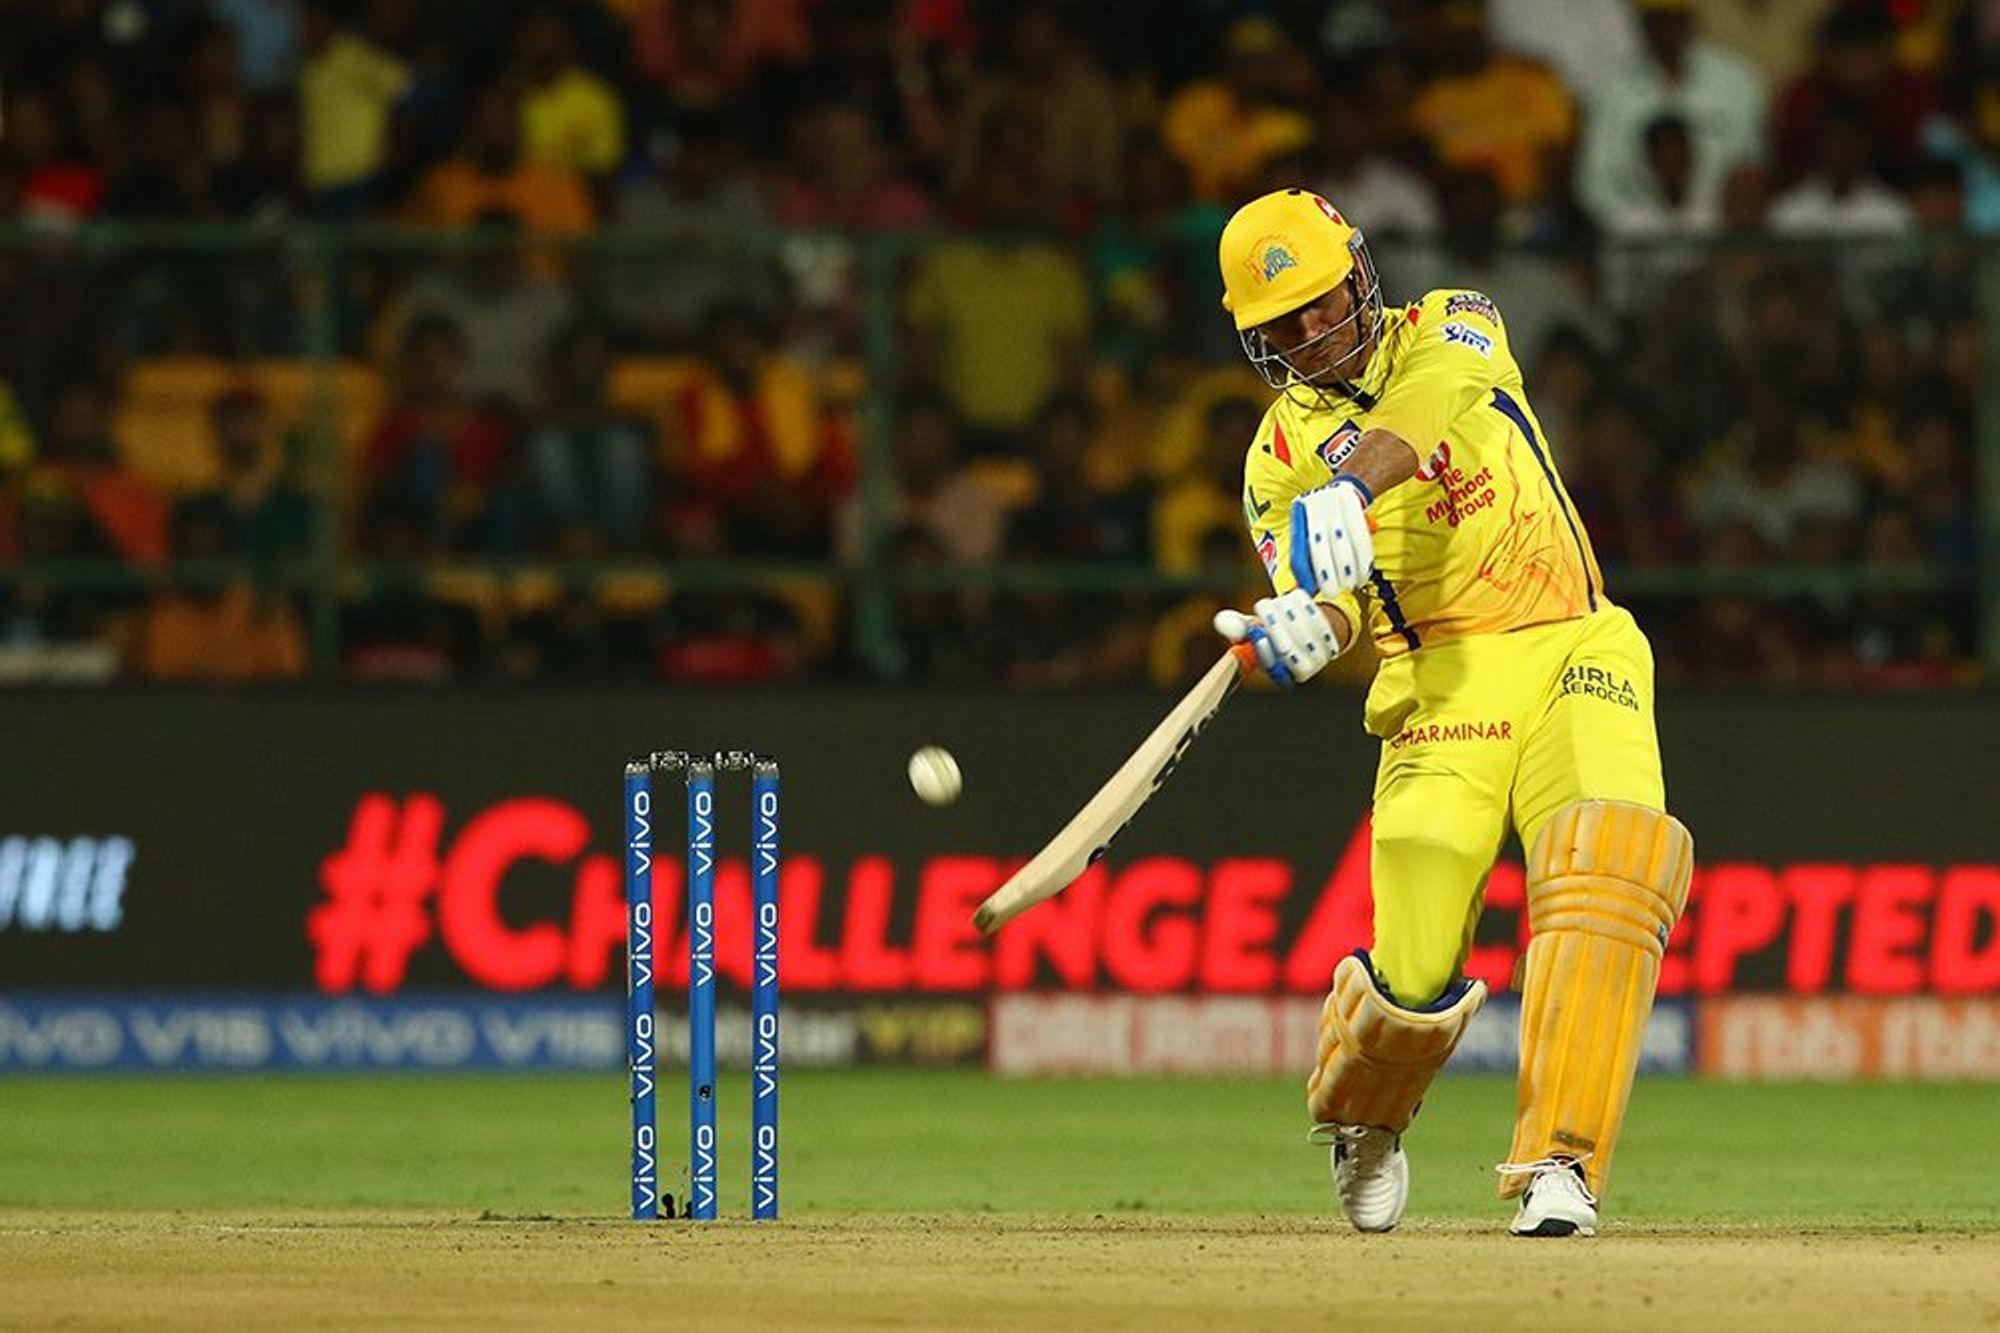 आईपीएल 2019: महेंद्र सिंह धोनी ने अंतिम ओवर में 24 रन बनाकर रोहित शर्मा को छोड़ा पीछे 1